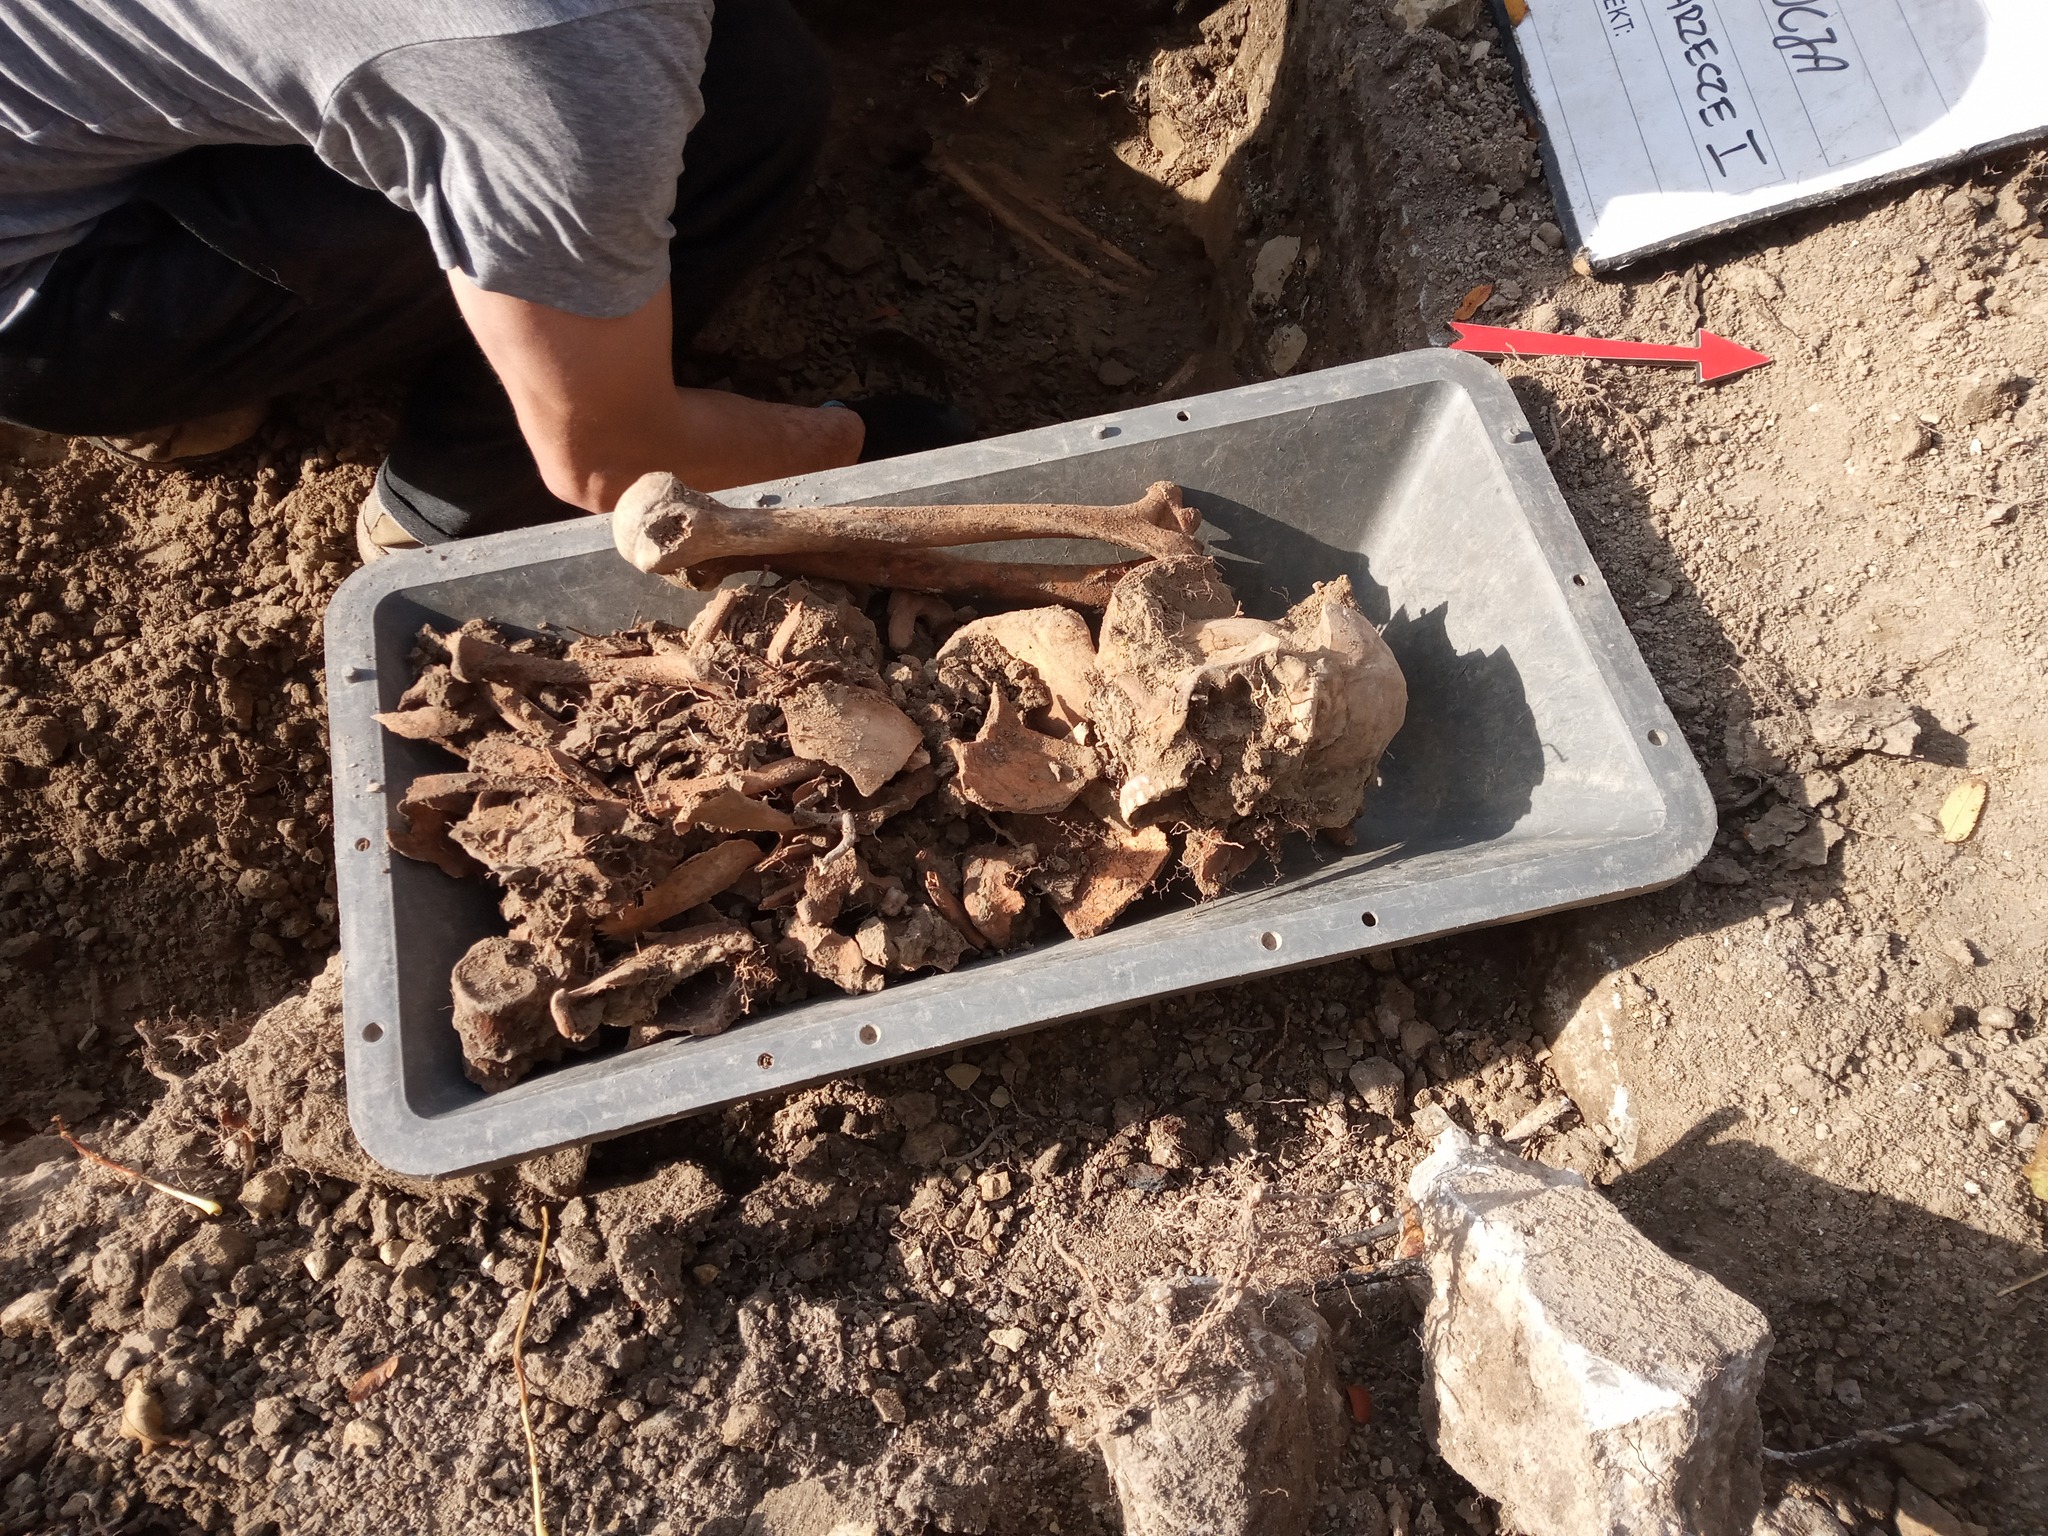 W wykopie znajdowały się ludzkie szczątki. Ujawniono szkielety dwóch osób (zdjęcia)